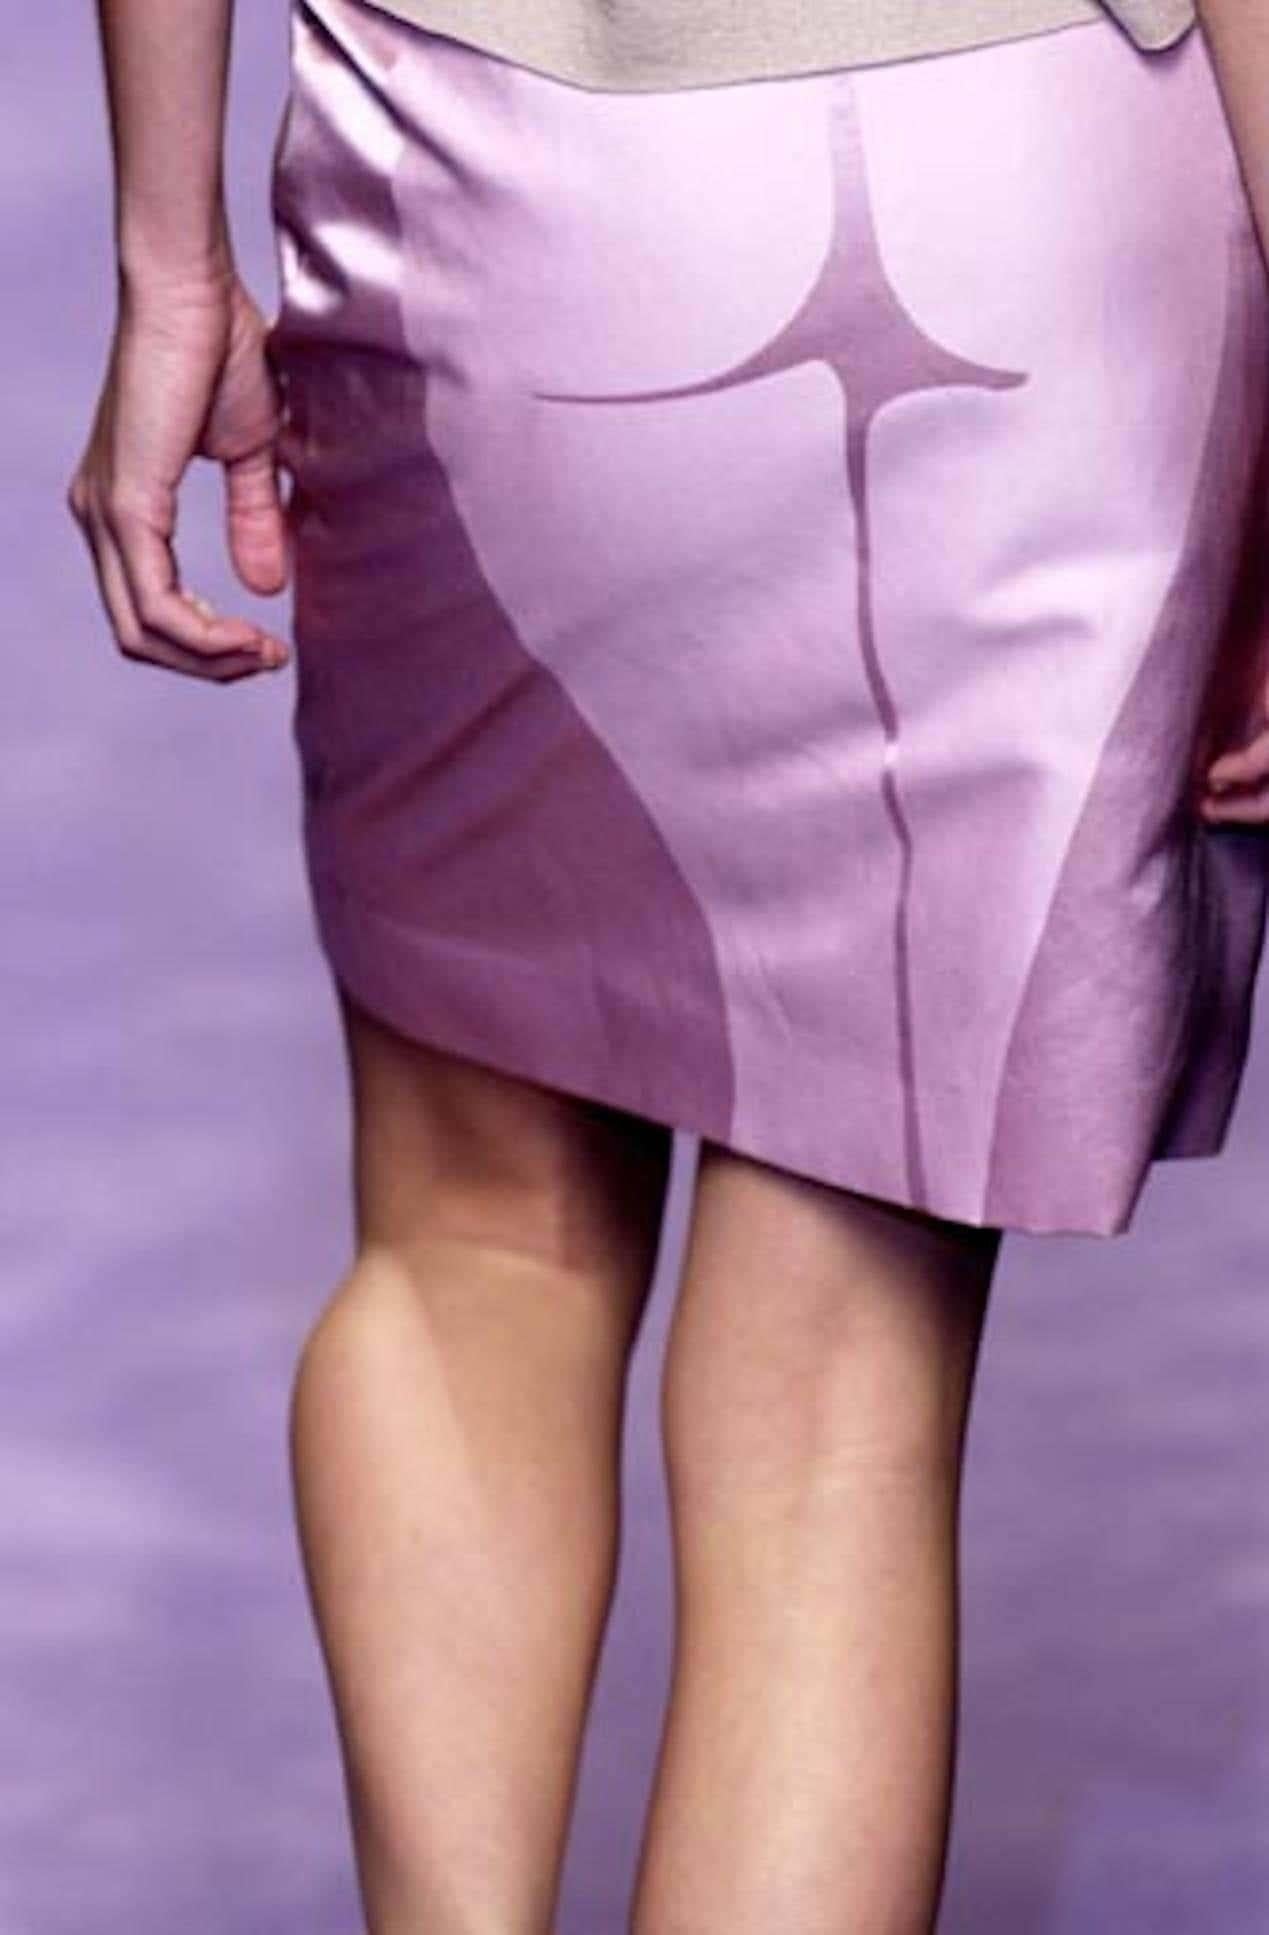 Voici une fabuleuse silhouette lavande poussiéreuse, la jupe Rive Gauche d'Yves Saint Laurent, dessinée par Tom Ford. Issue de la collection printemps/été 2003, cette jupe a fait ses débuts en rose dans le look 6 porté par Mariacarla Boscono. Cette